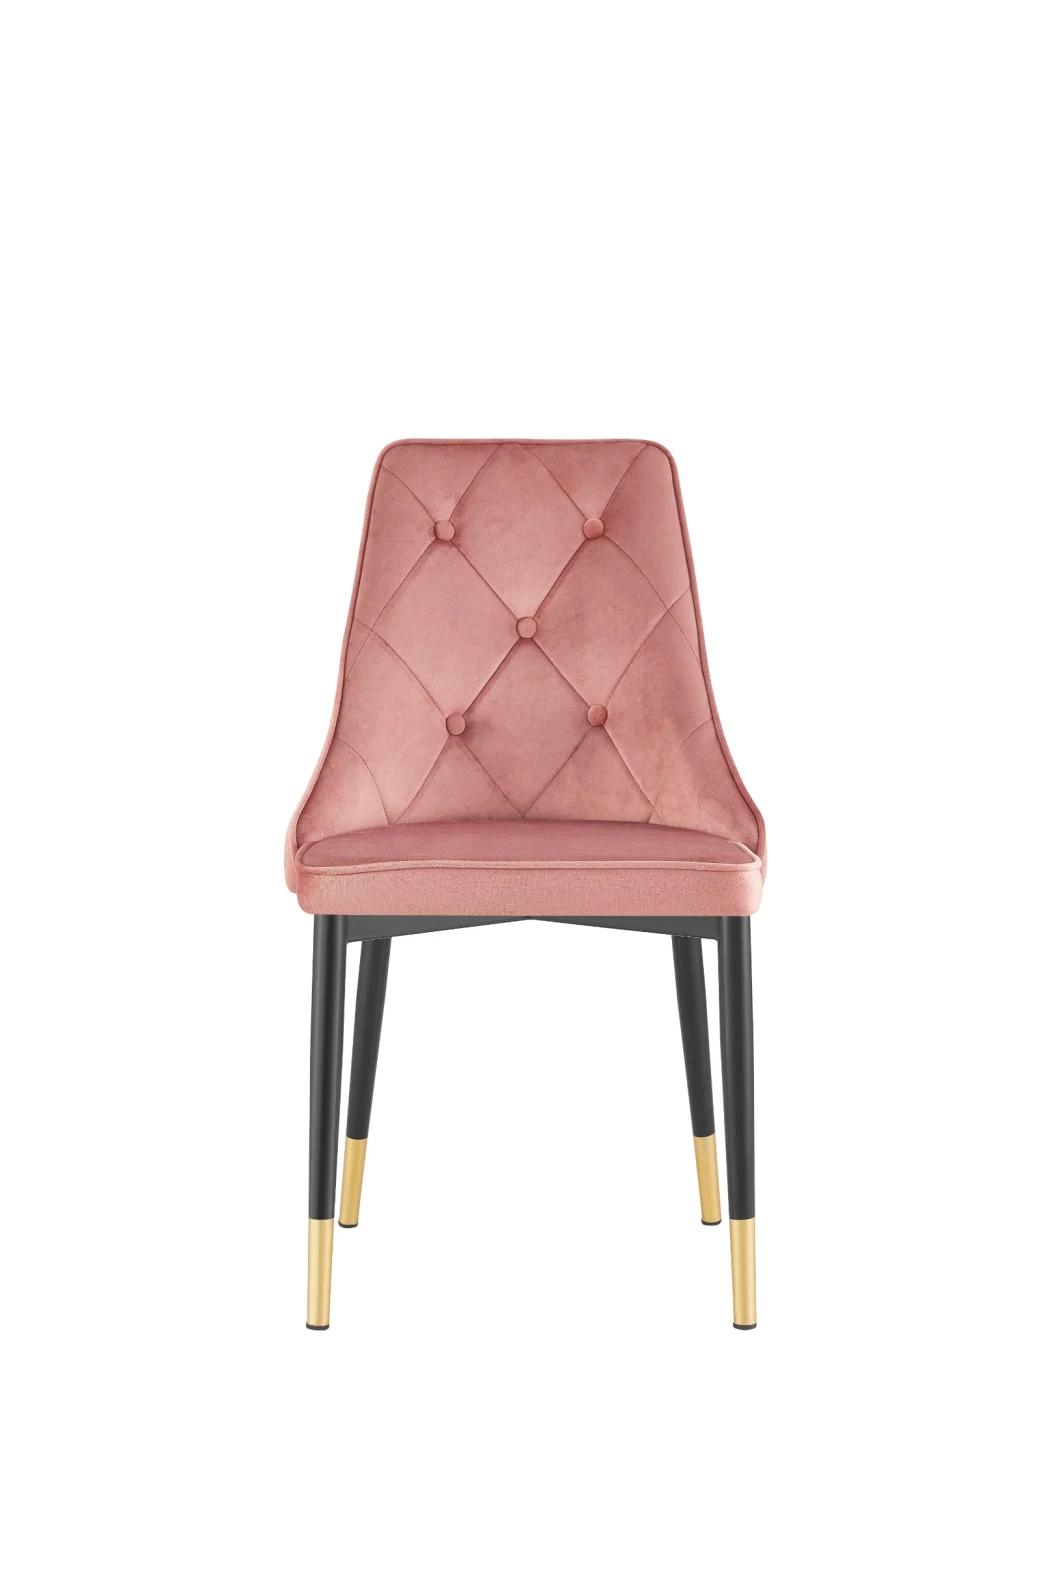 Hot Selling Velvet Home Furniture Metal Leg Dining Chair Armless Restaurant Chair